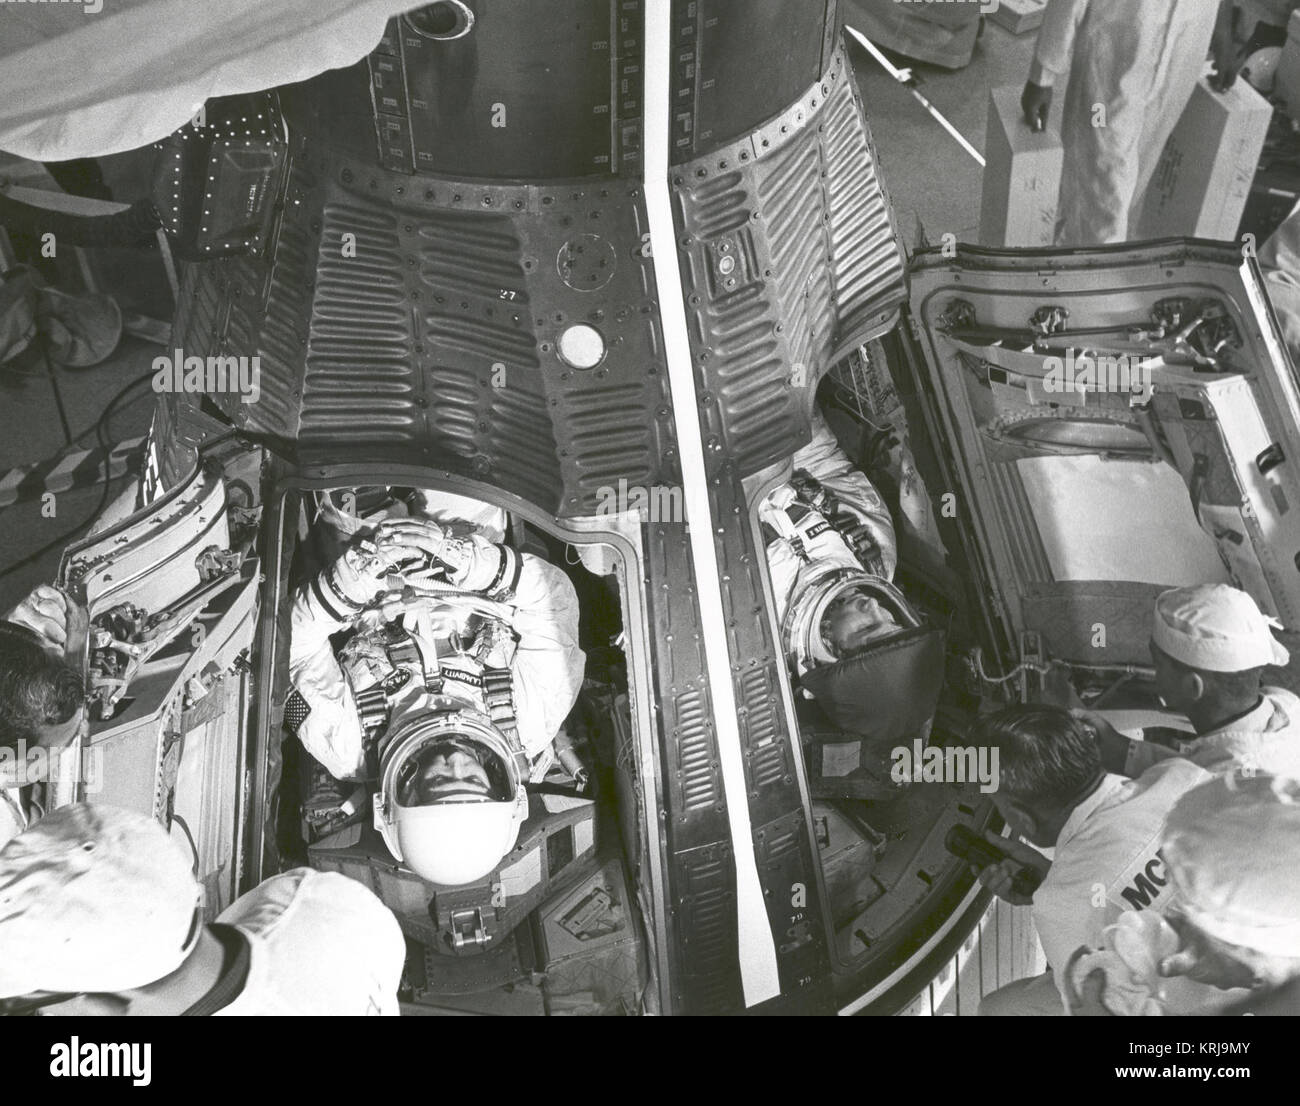 Astronauten James A. McDivitt, Befehl Pilot (links) und Edward H. White II, pilot, werden wenige Minuten nach dem Einlegen in Gemini IV-Raumsonde der NASA ca. 7:15 Uhr EST am Morgen des 3. Juni 1965, um komplexe 19 starten angezeigt. Nach 1 Stunde und 16 Minuten Verzögerung, wegen Schwierigkeiten bei der Senkung der Trägerrakete Aufrichter startete das Raumschiff um 10:16 Uhr EST. Eine Abdeckung über White gold Visier verhindert, dass mögliche kratzen bevor Luke schließen. Das gold Visier geschützt weiß von den Strahlen der Sonne während seiner EVA, die erste jemals von den amerikanischen Astronauten durchgeführt. Gemini IV-Astronauten erwarten Stockfoto